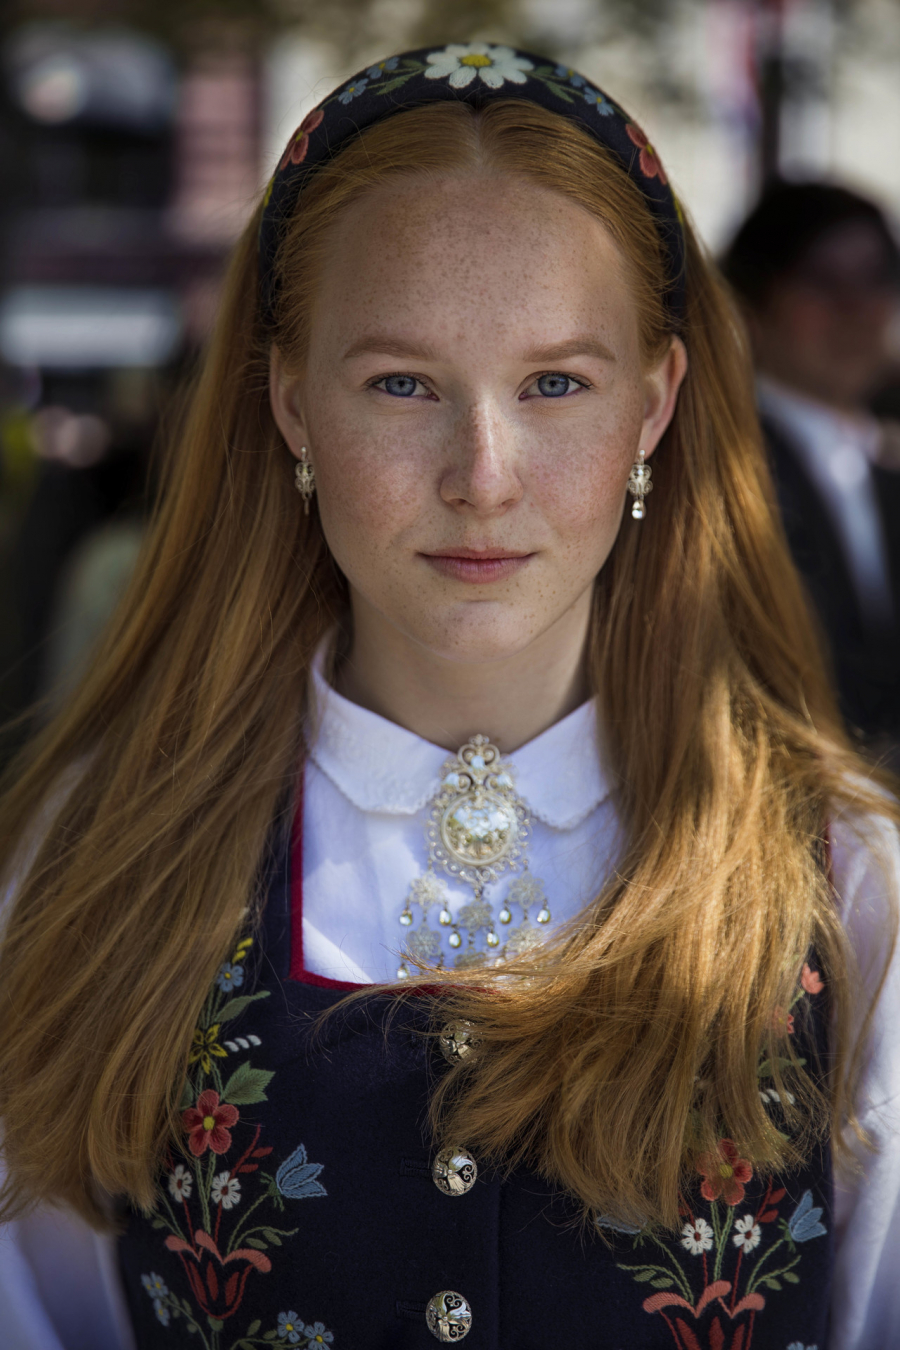 Julie mặc bộ trang phục dân gian tinh xảo trong ngày Quốc khánh Na Uy.